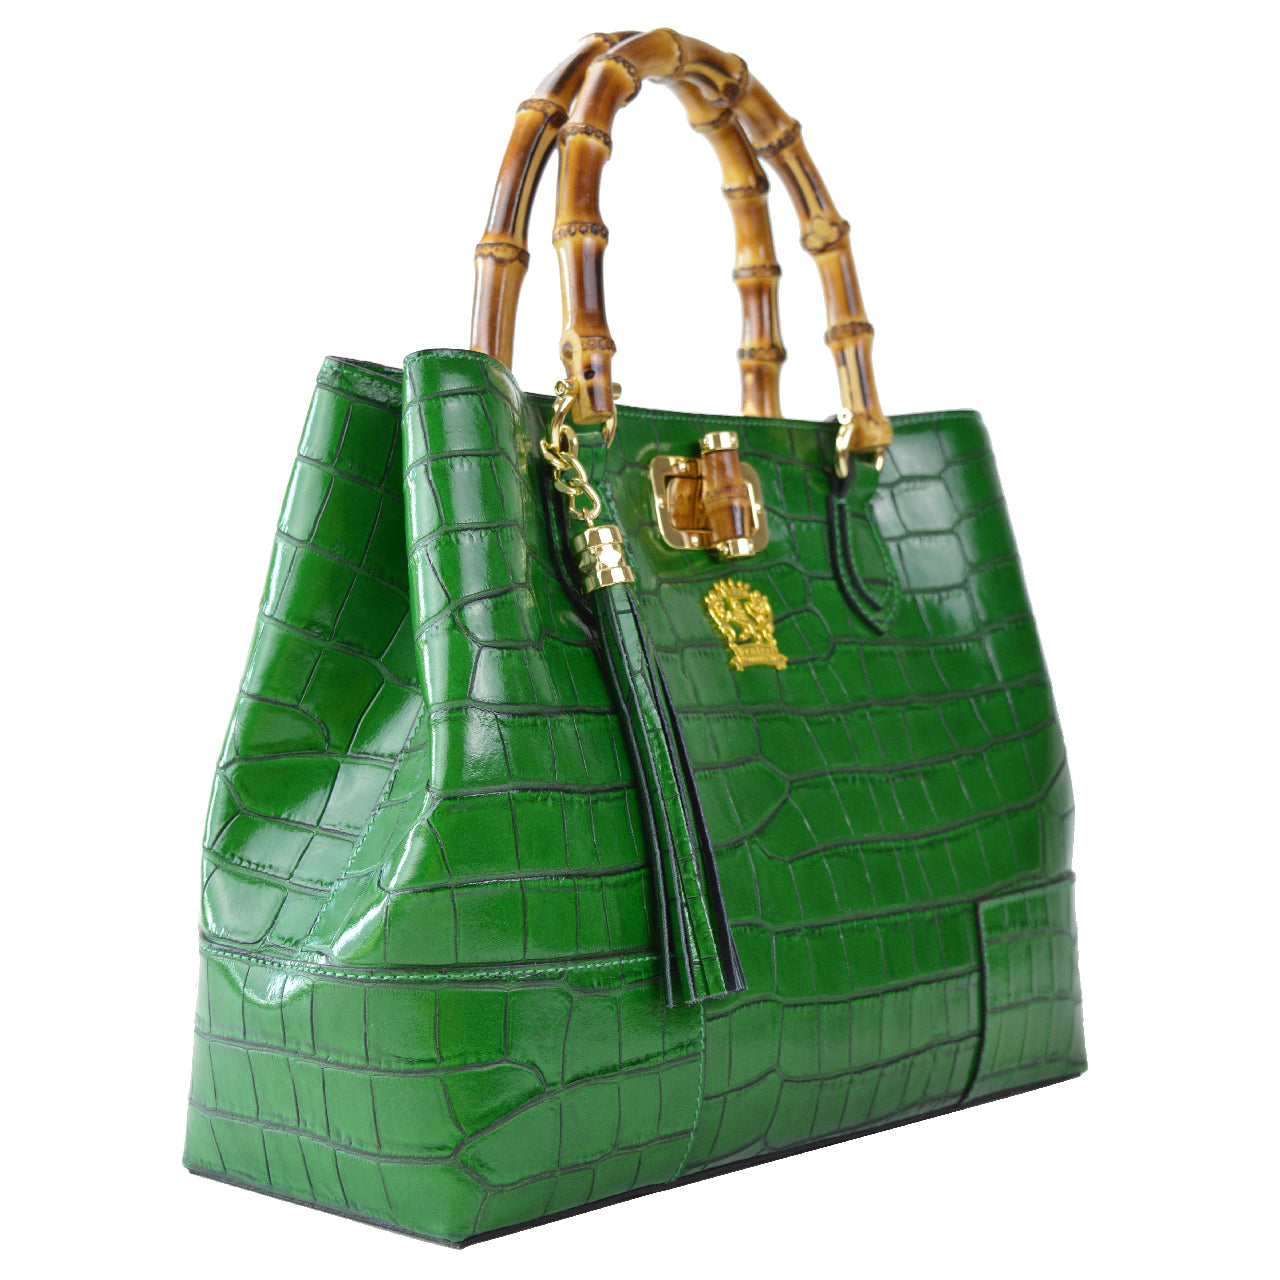 Pratesi Sarteano Shoulder Bag in genuine Italian leather K291 - Sarteano K291 Violet